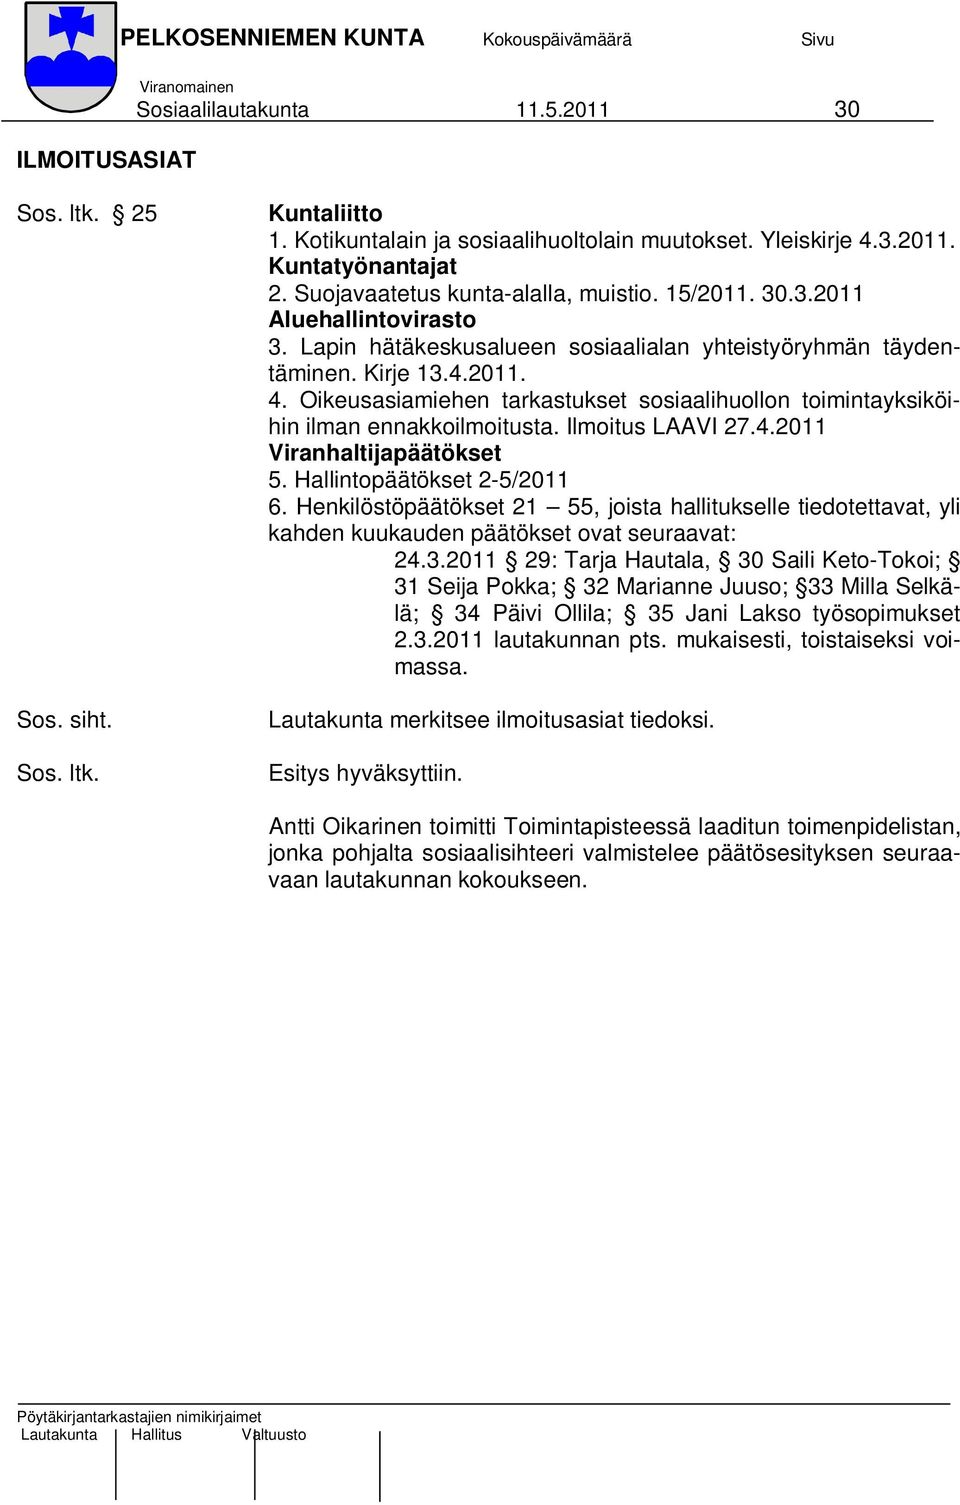 Oikeusasiamiehen tarkastukset sosiaalihuollon toimintayksiköihin ilman ennakkoilmoitusta. Ilmoitus LAAVI 27.4.2011 Viranhaltijapäätökset 5. Hallintopäätökset 2-5/2011 6.